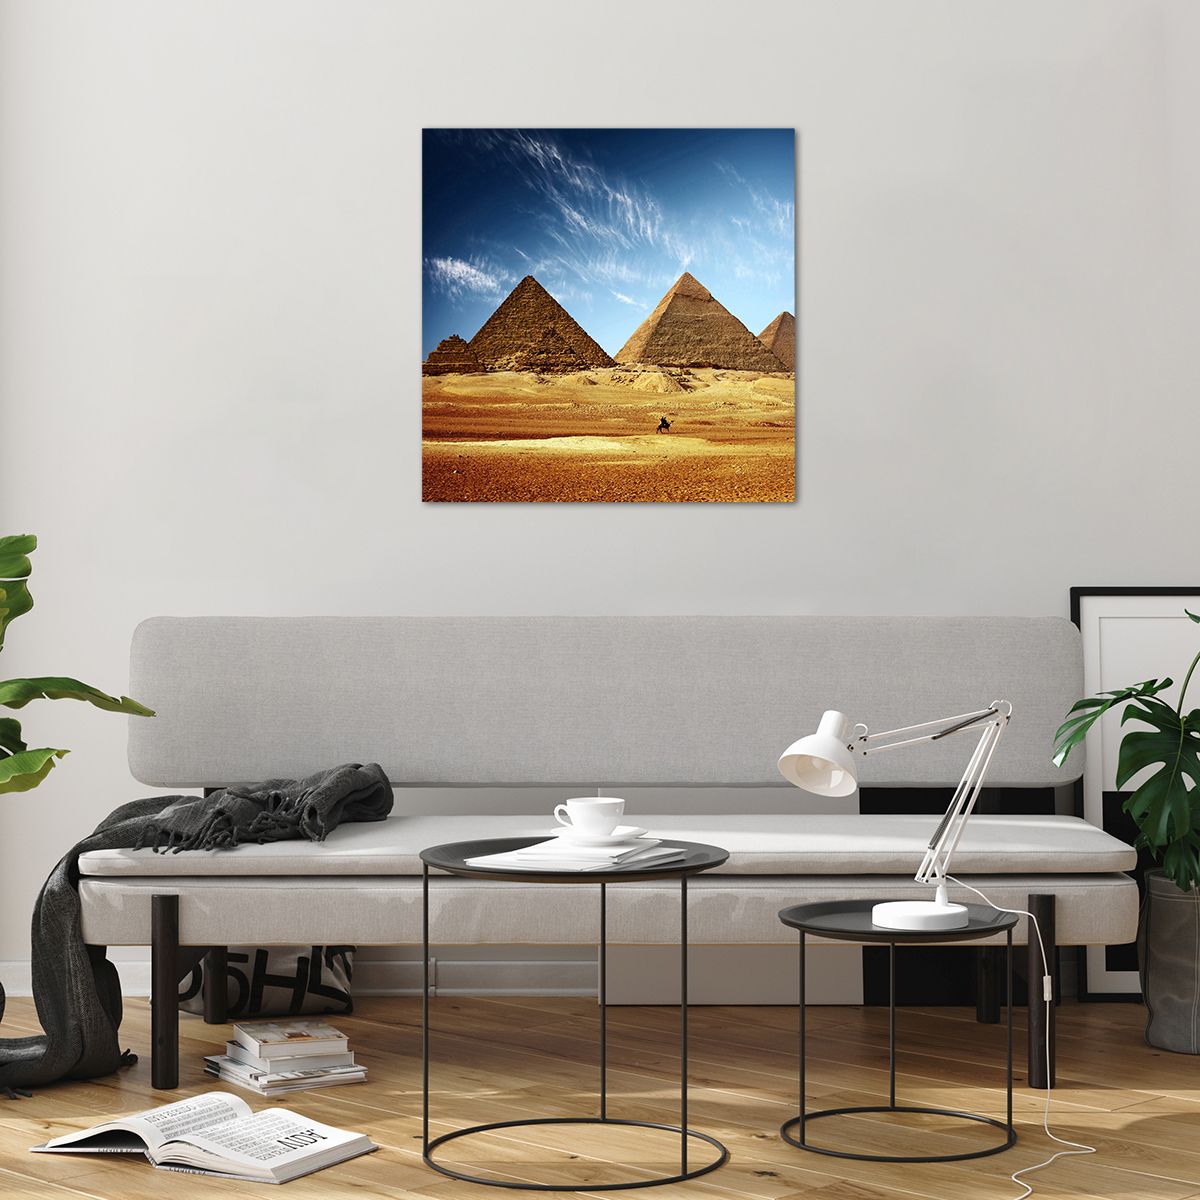 Bilder auf glas Pyramiden, Bilder auf glas Die Architektur, Bilder auf glas Landschaft, Bilder auf glas Ägypten, Bilder auf glas Wüste